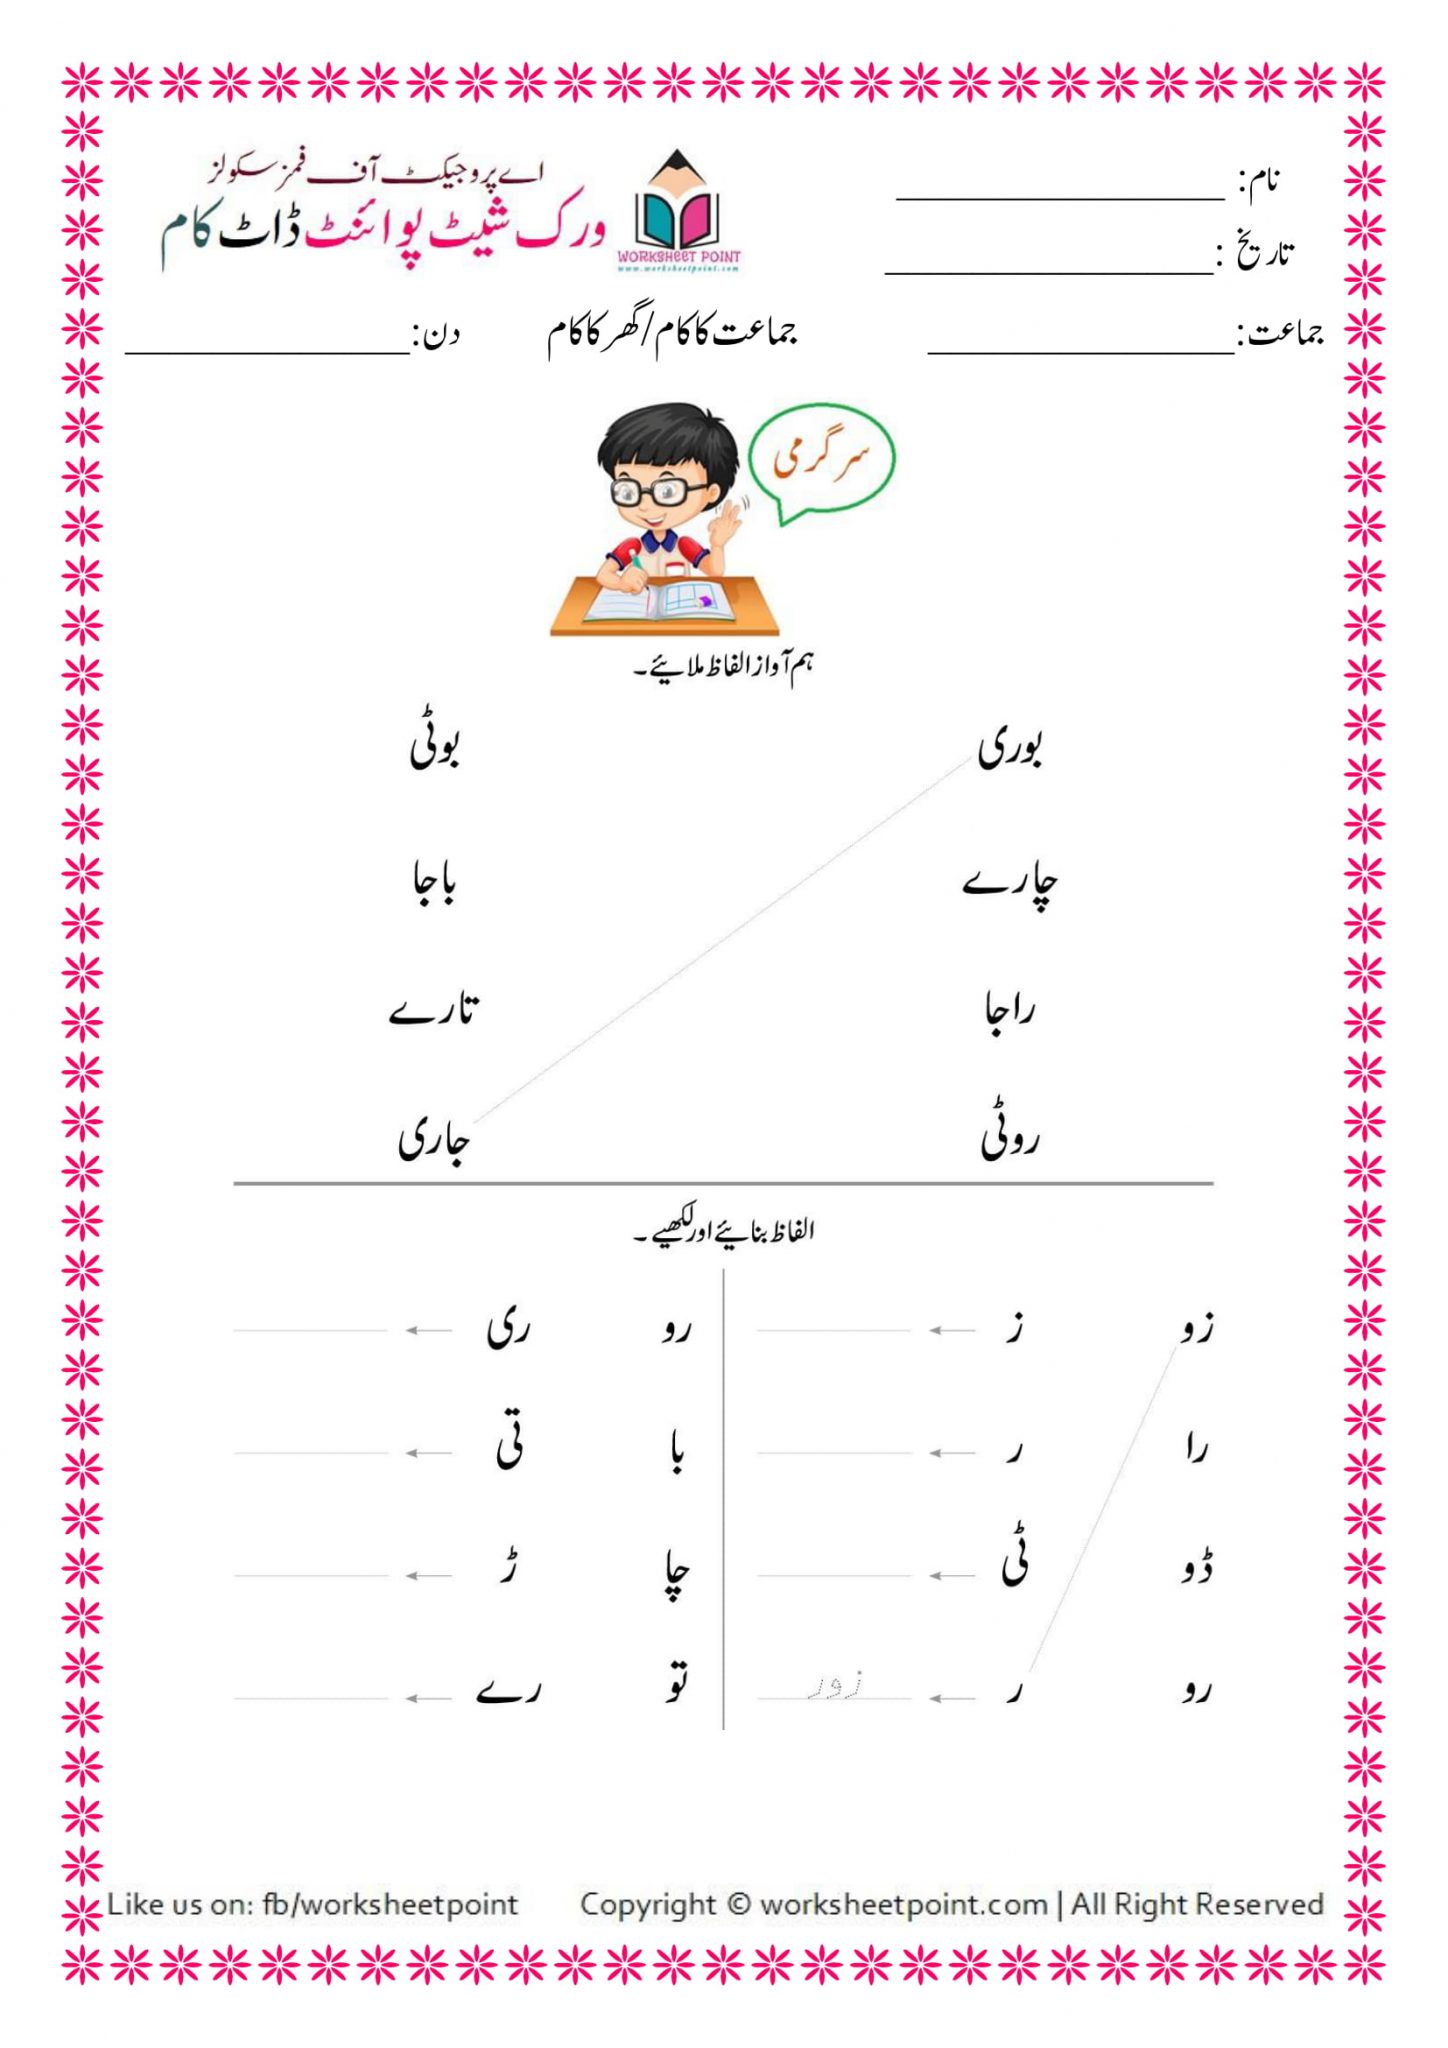 urdu kindergarten worksheets pack 2 worksheet point